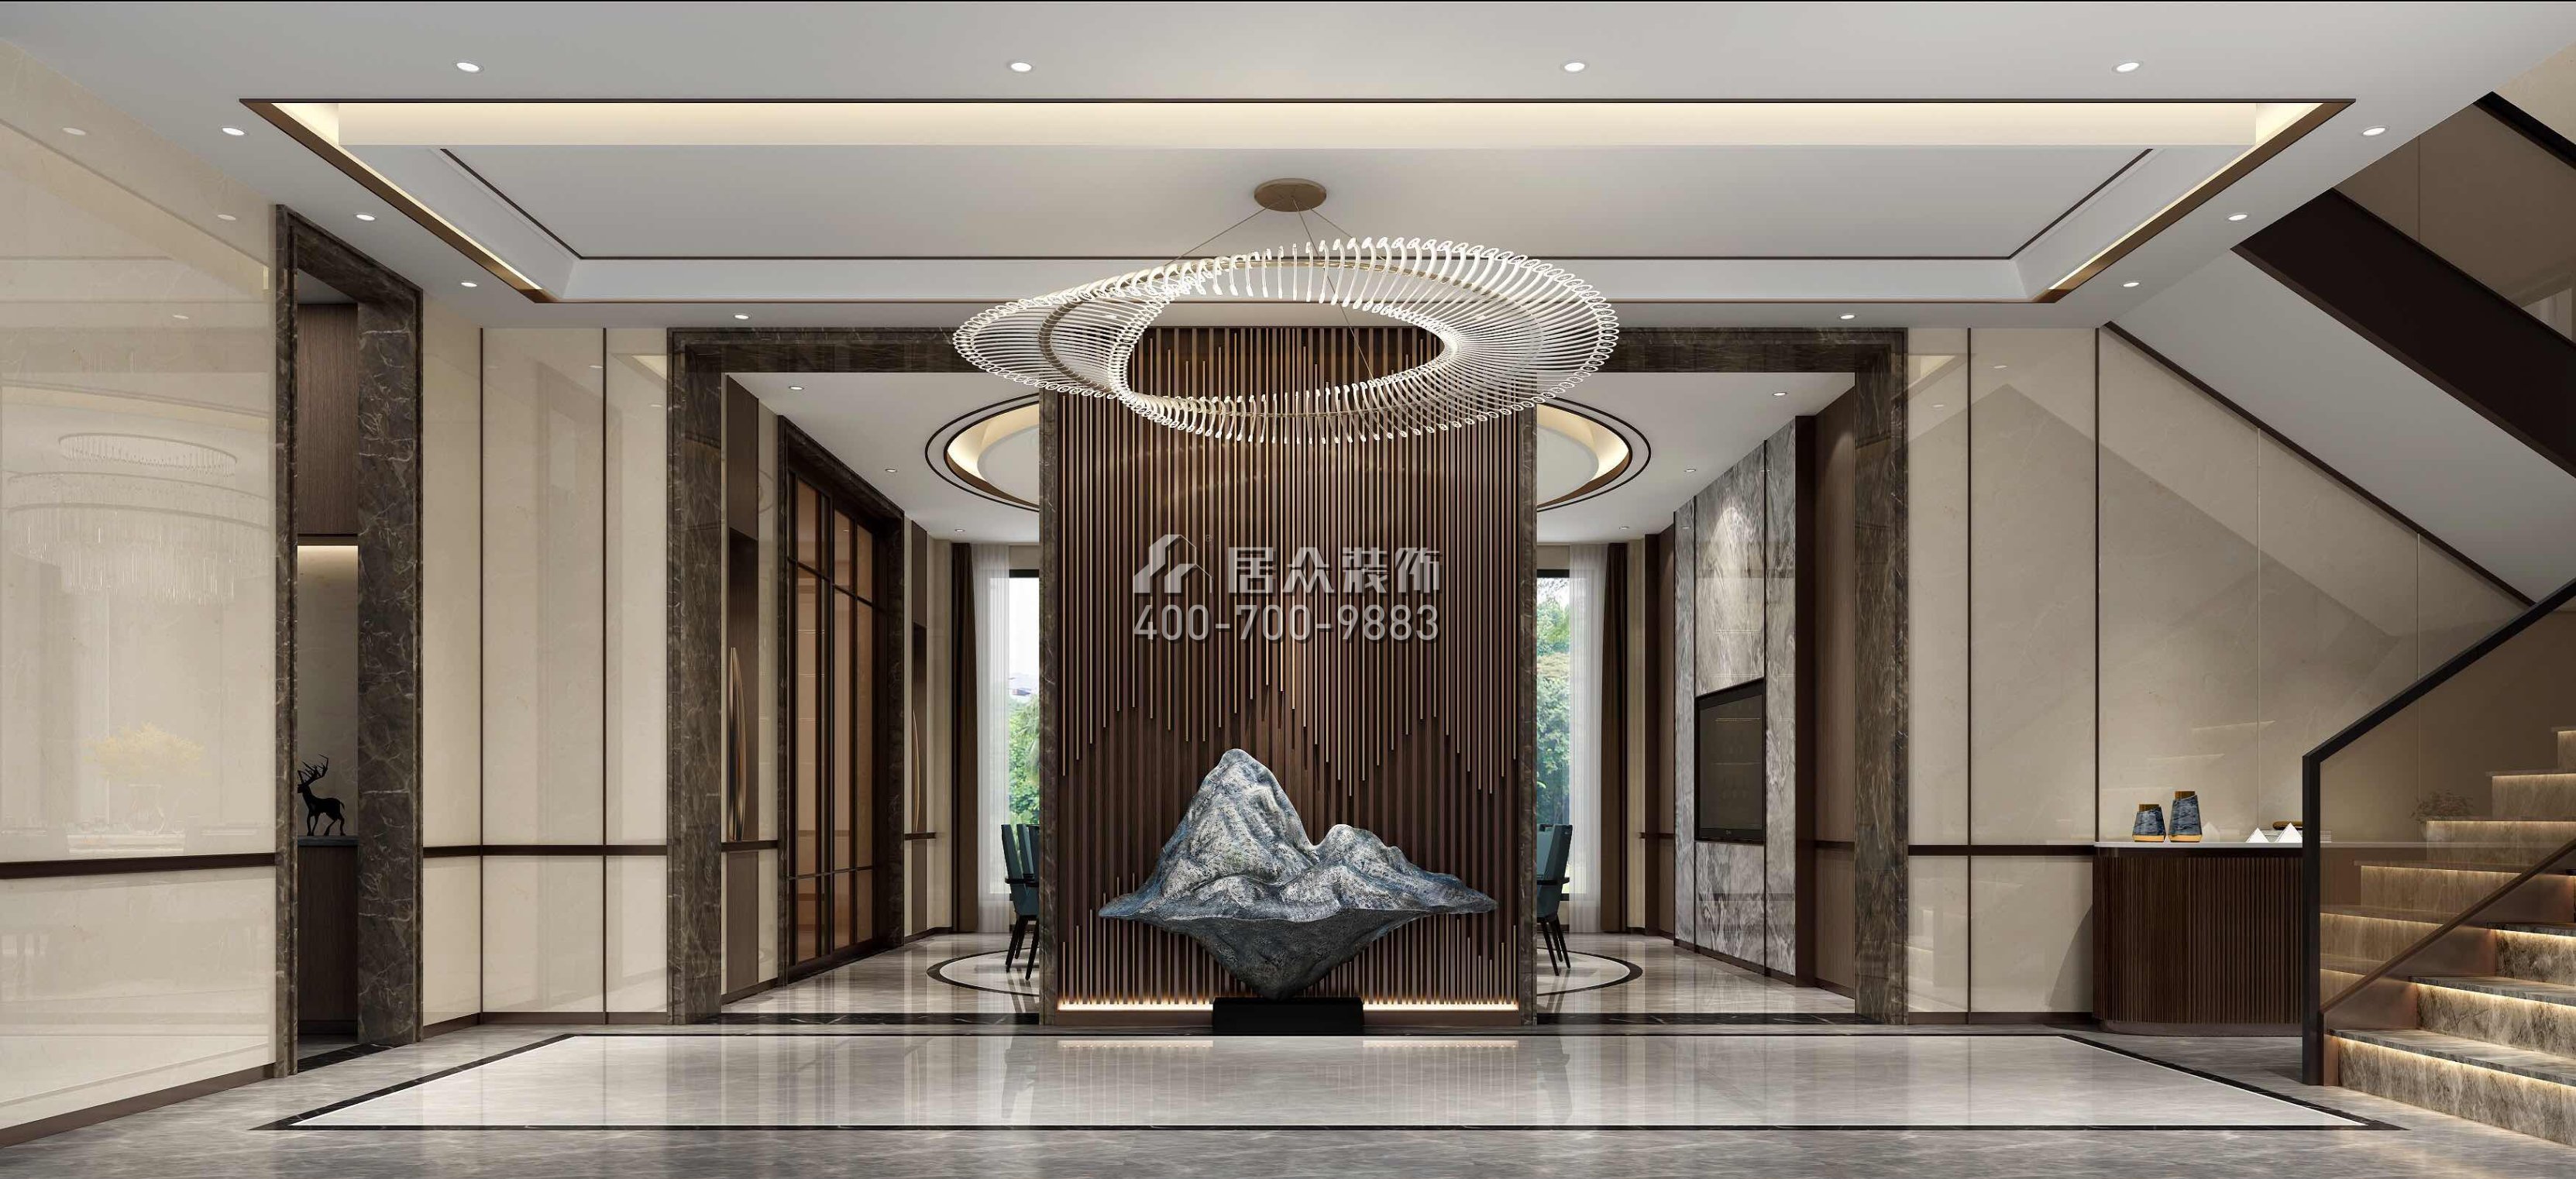 新世纪颐龙湾1000平方米中式风格别墅户型封面装修效果图